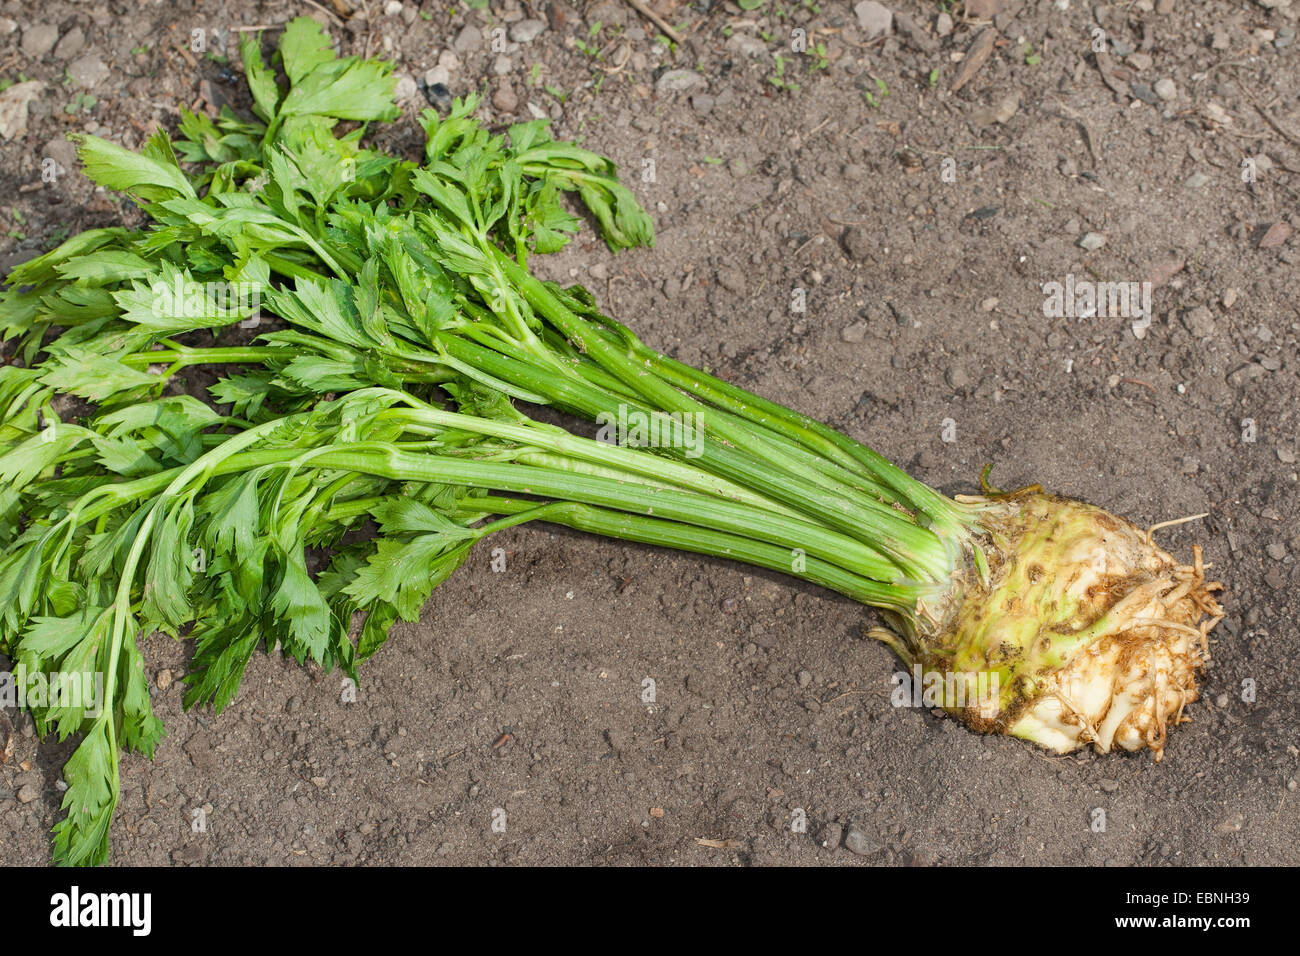 Celery, Celeriac, Turnip-rooted celery, Knob celery (Apium graveolens var. rapaceum, Apium graveolens rapaceum, Apium rapaceum), harvested celery, Germany Stock Photo